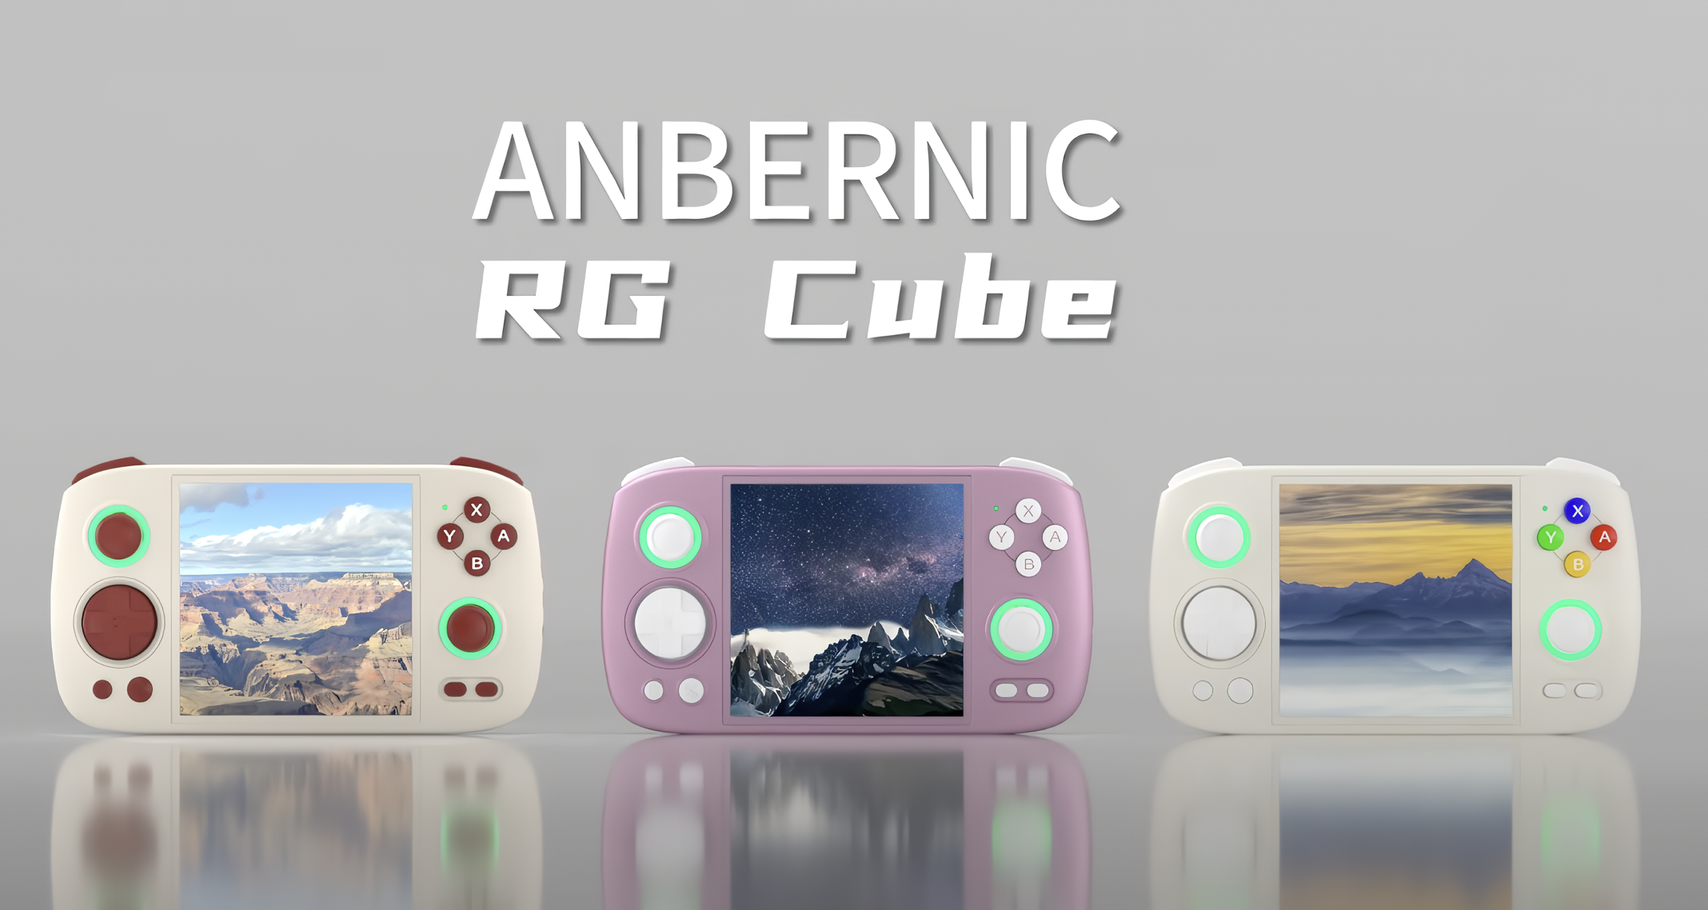 Anbernic RG Cube spillkonsoll for retrospillentusiaster har blitt avduket